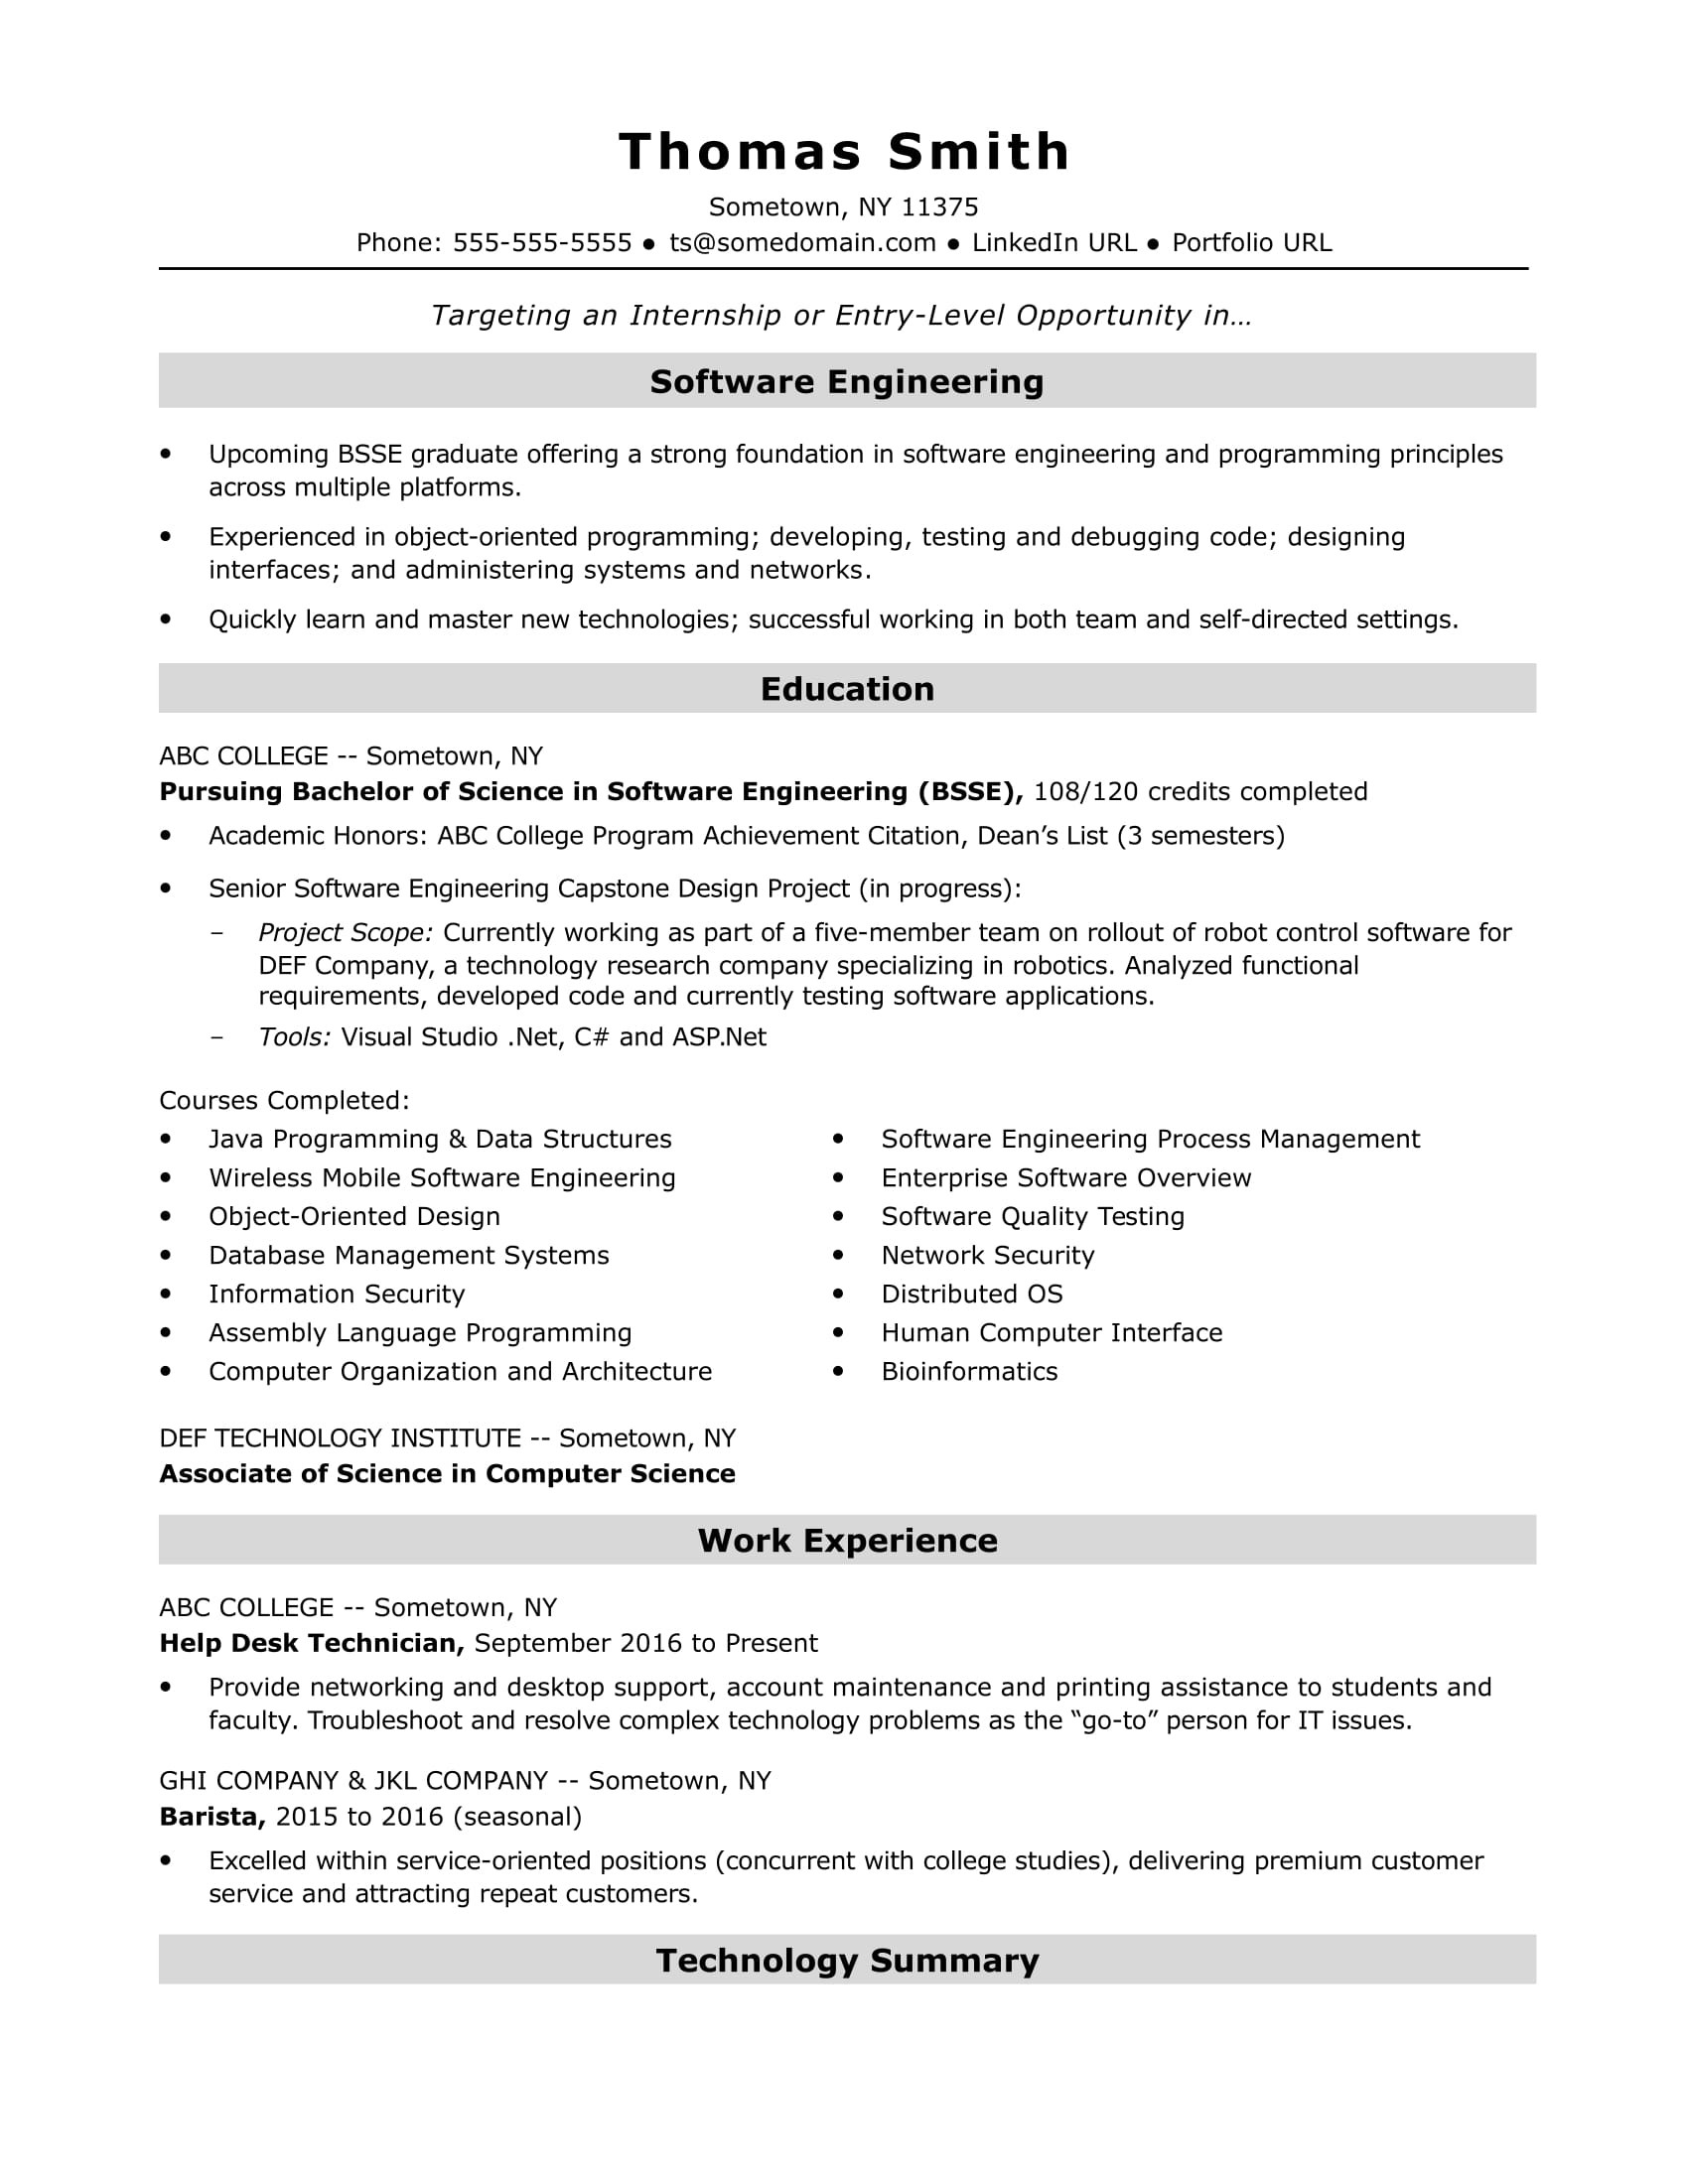 Sample Resume for Java Developer Fresher Entry-level software Engineer Resume Sample Monster.com